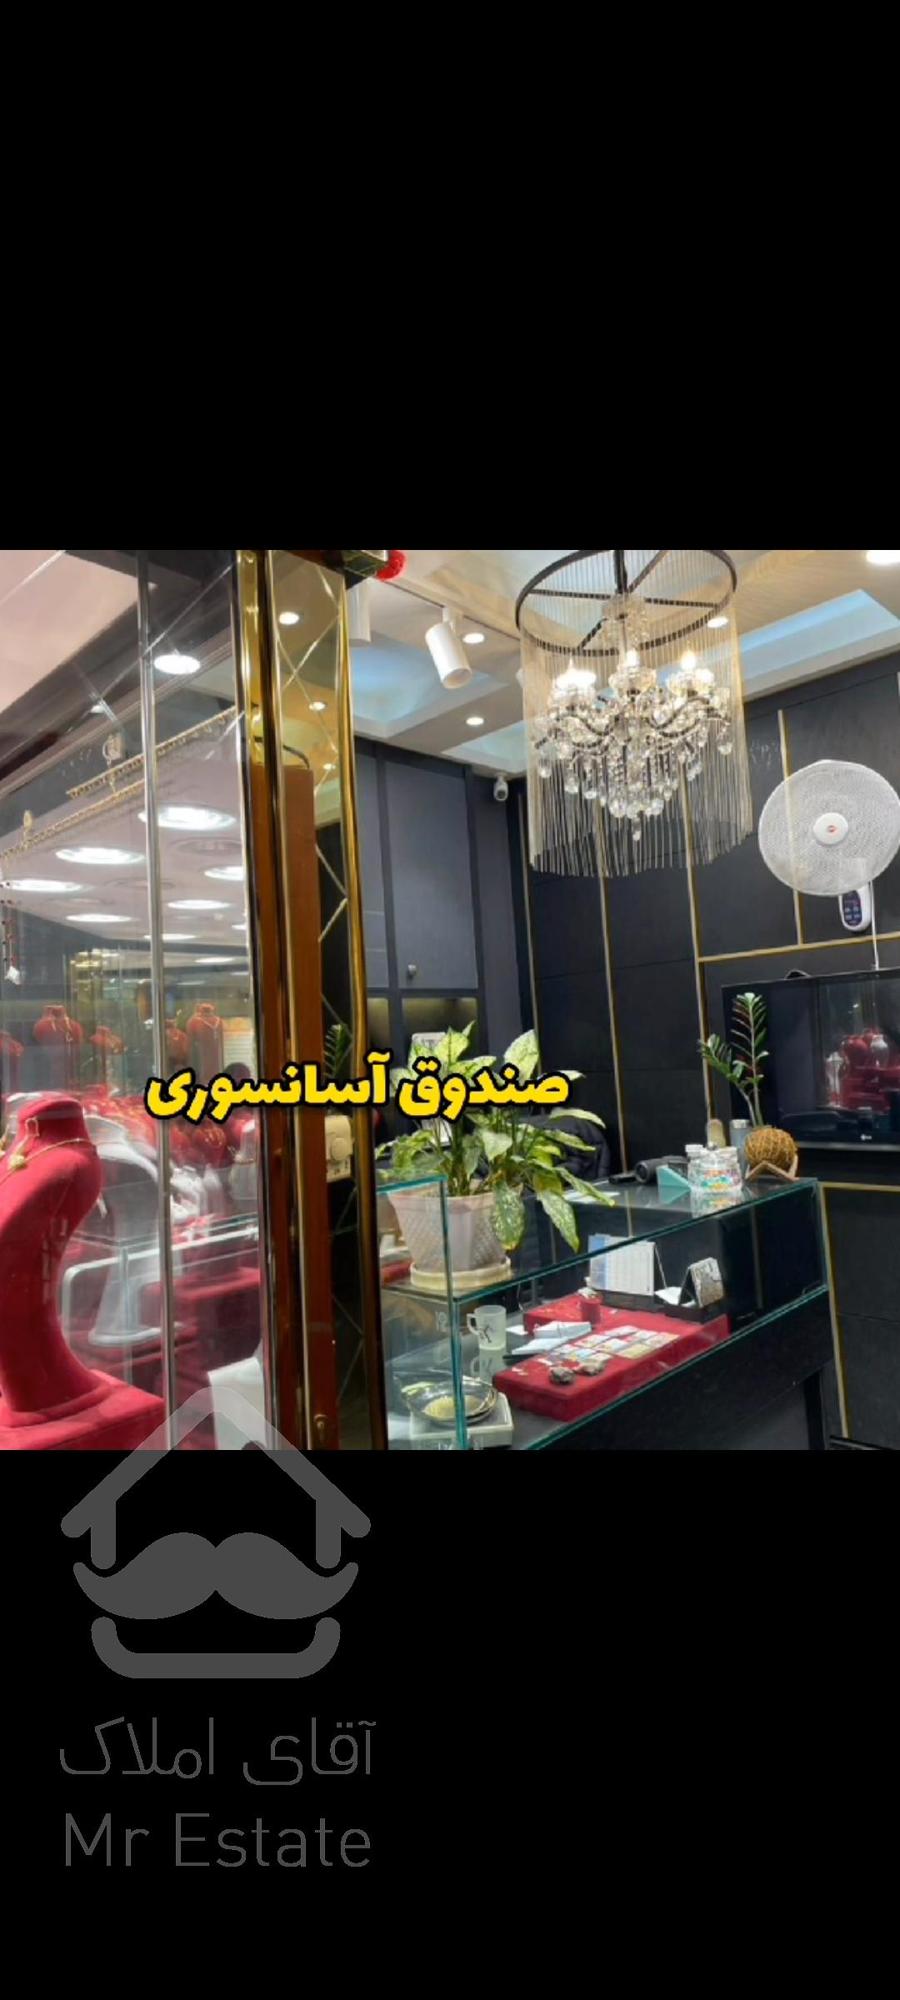 مغازه طلا فروشی تهران